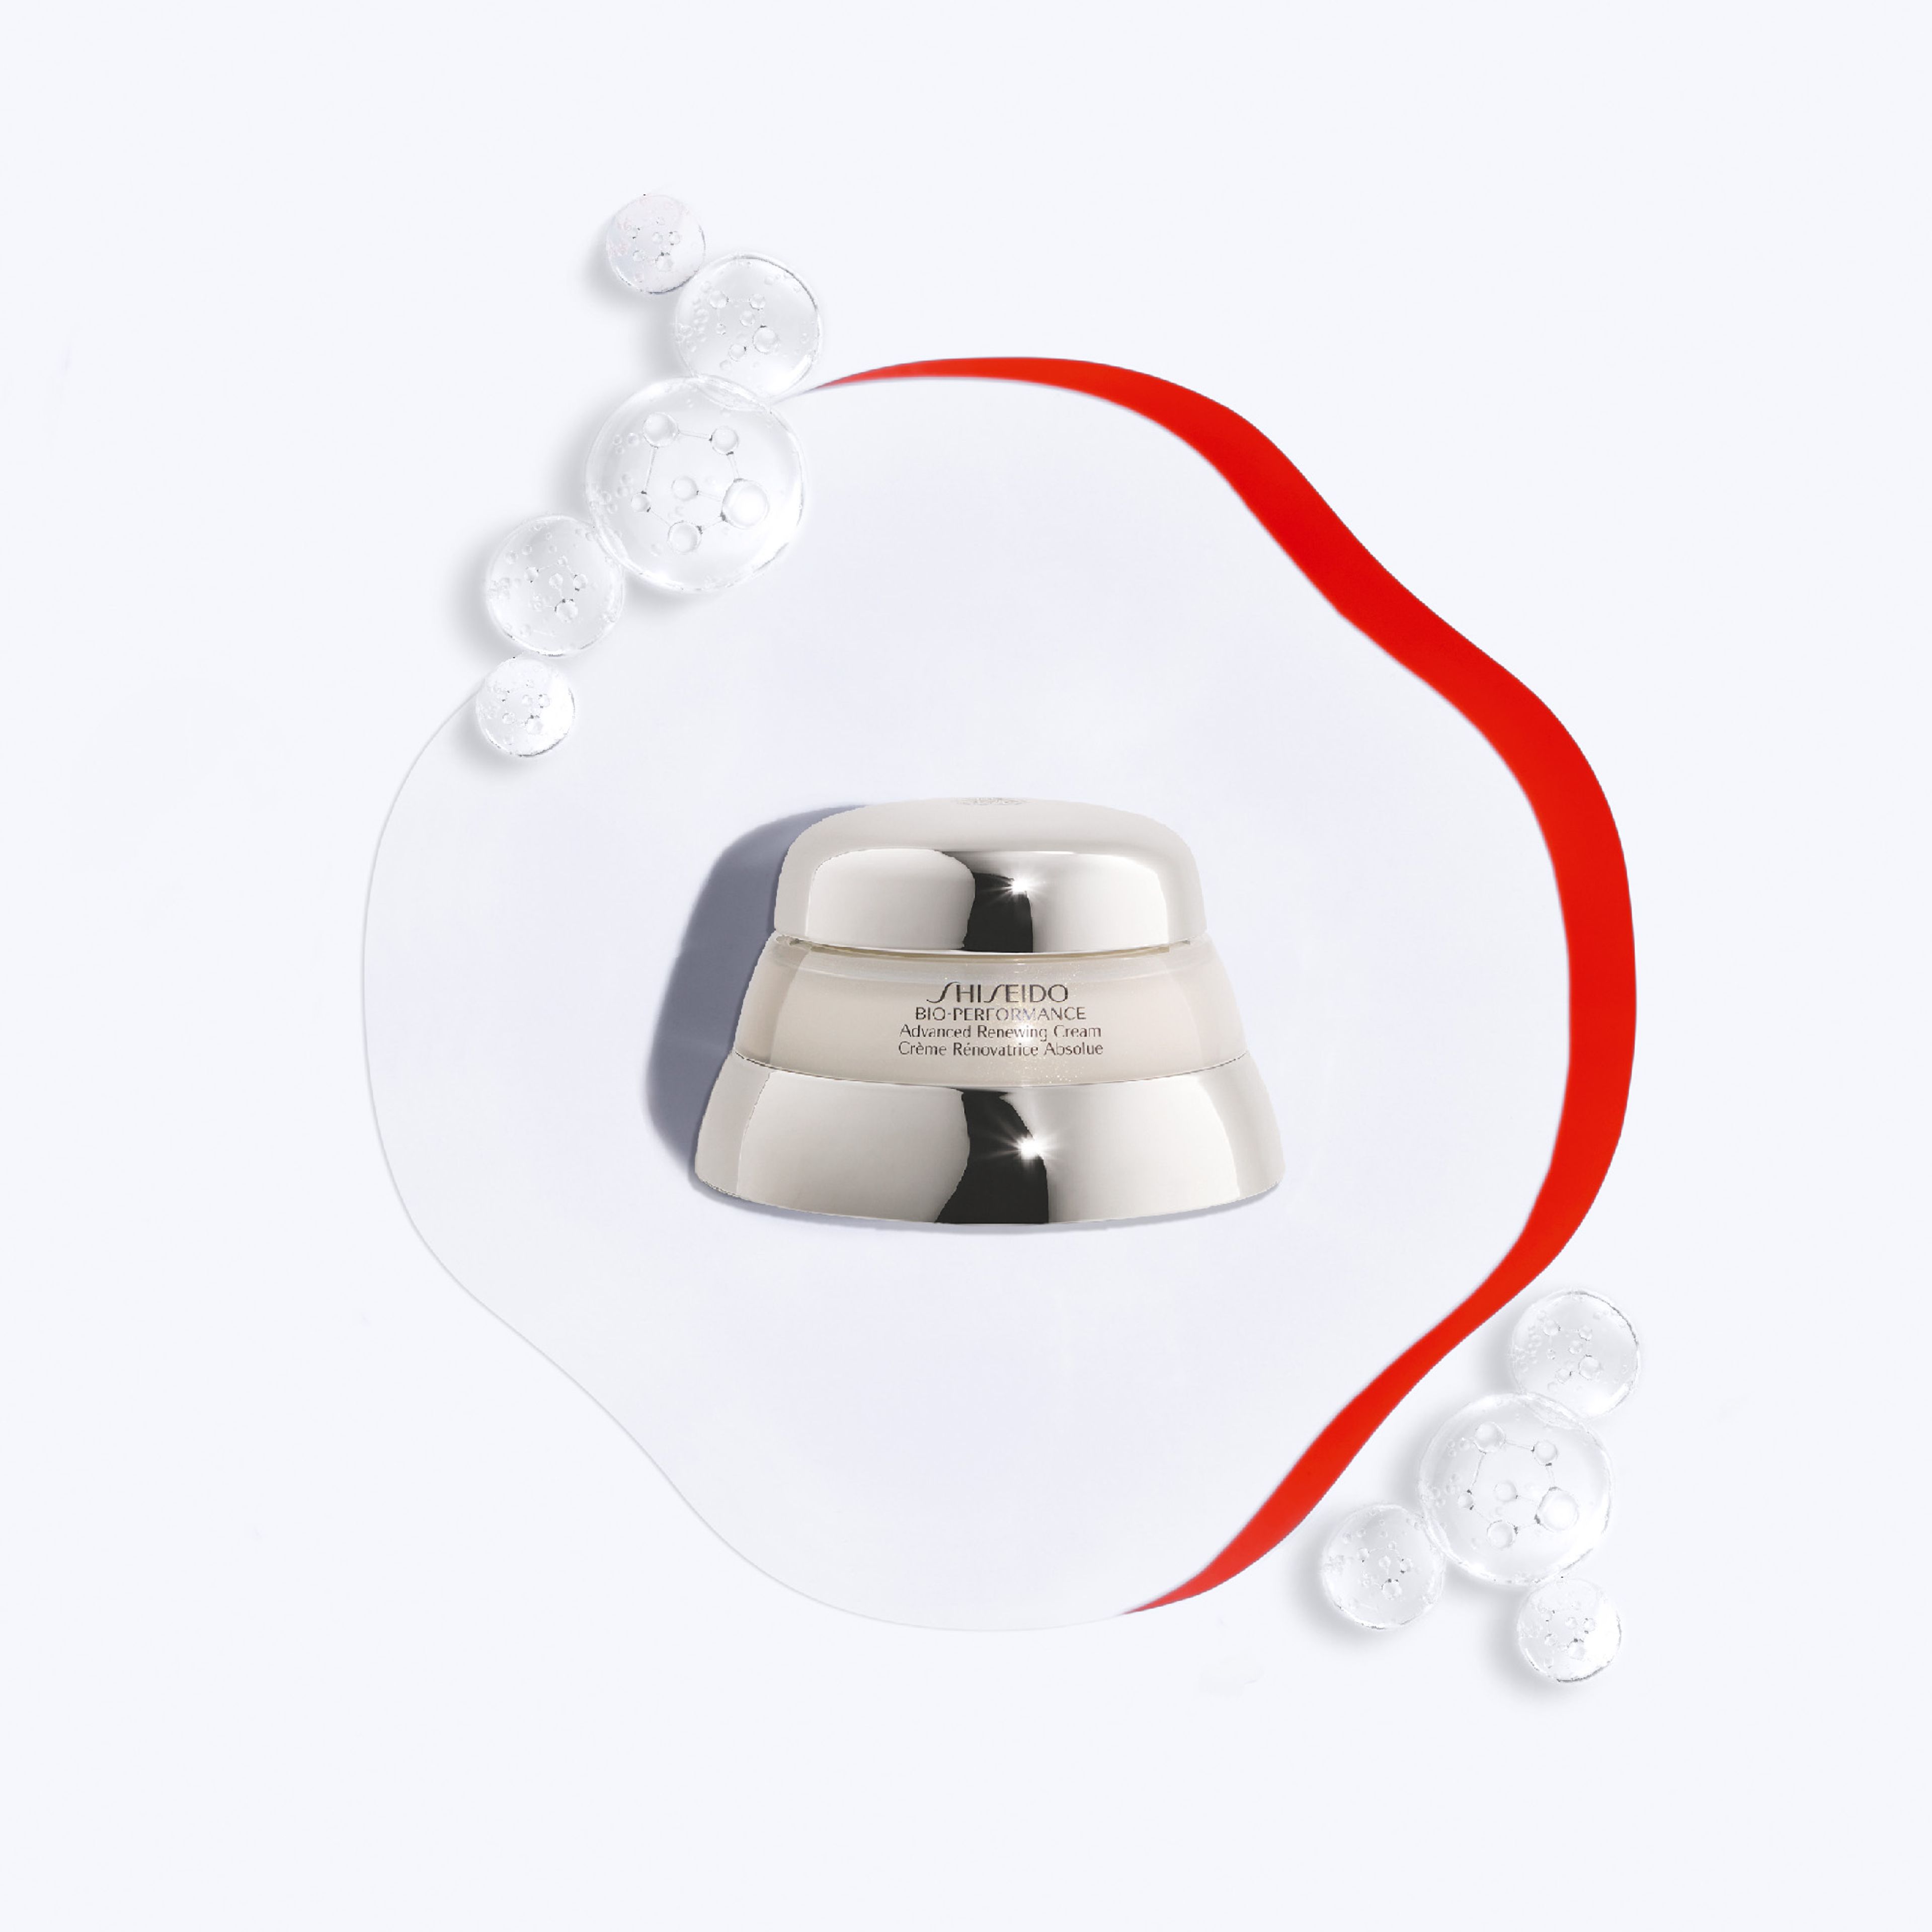 Shiseido Advanced Super Revitalizing Cream 6